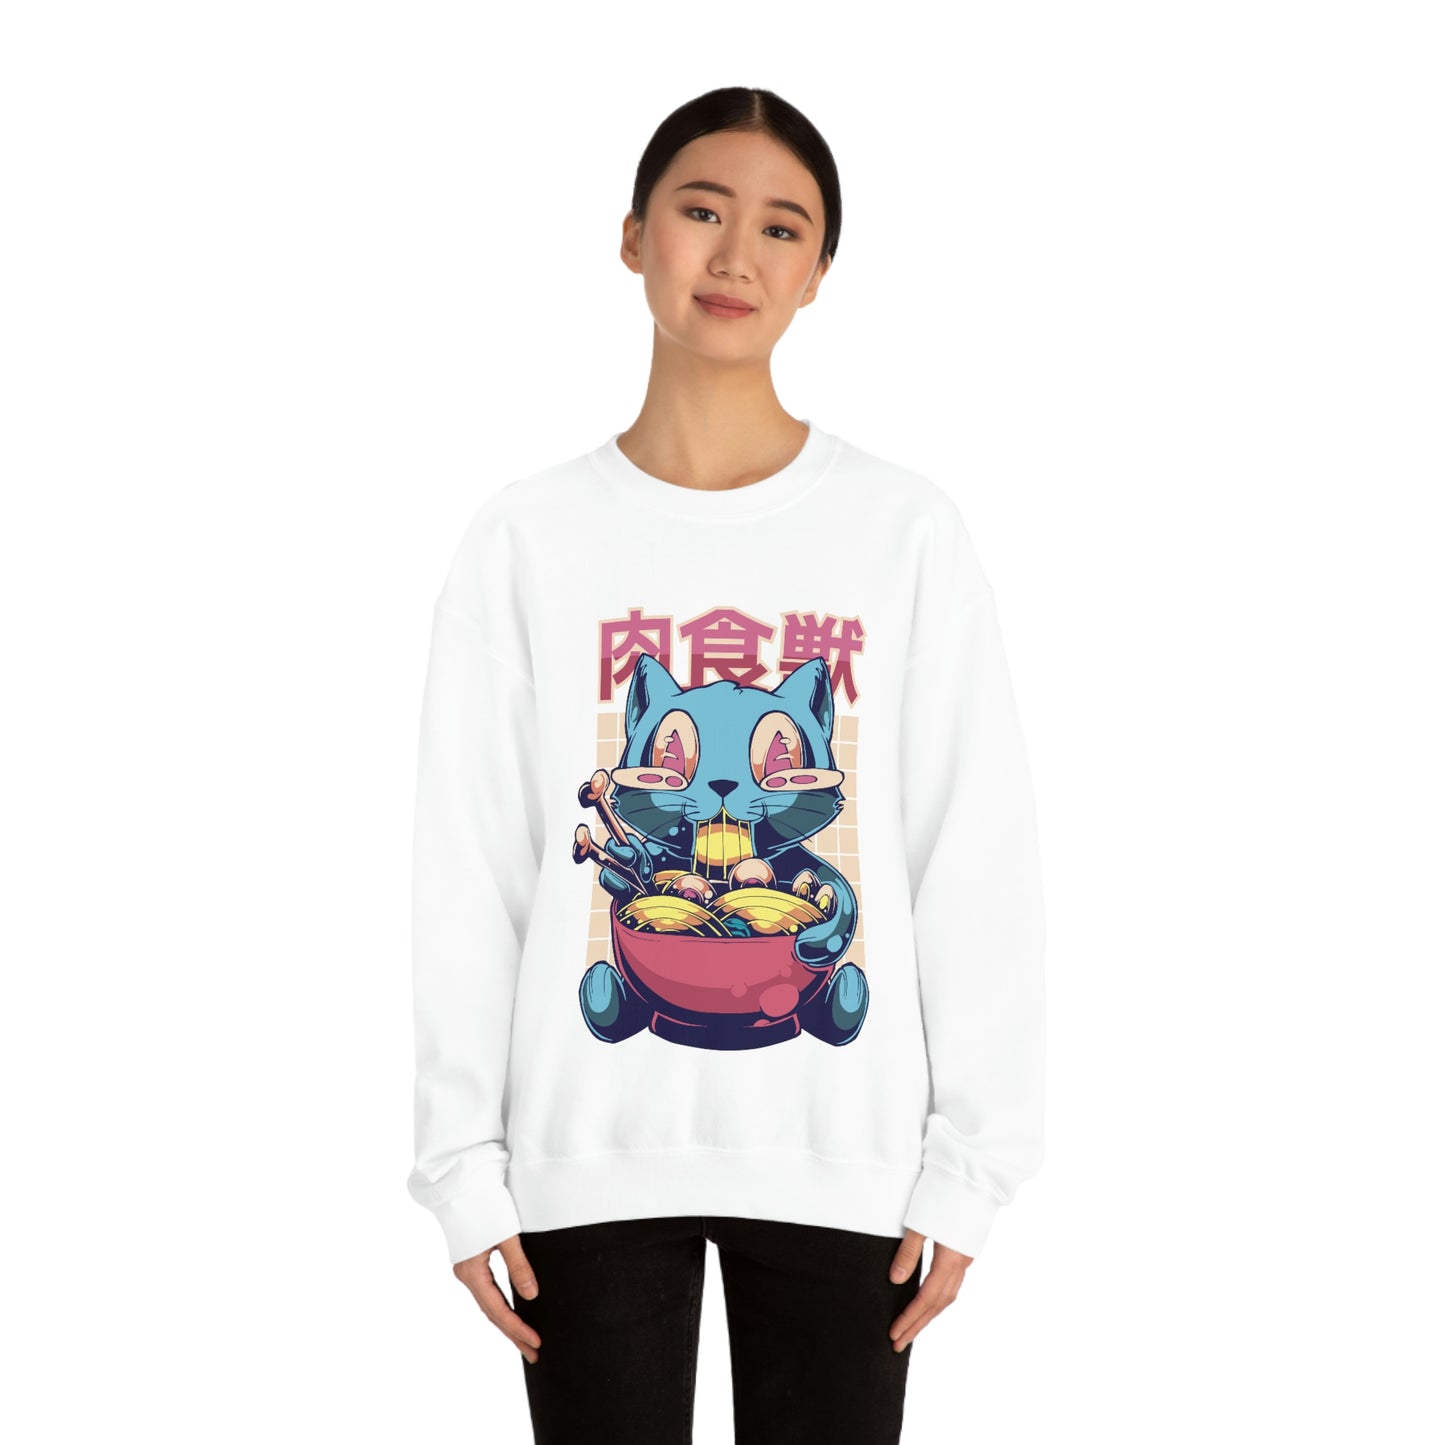 Kawaii Sweatshirt, Kawaii Clothing, Kawaii Clothes, Yami Kawaii Aesthetic, Pastel Kawaii Sweatshirt Sweatshirt